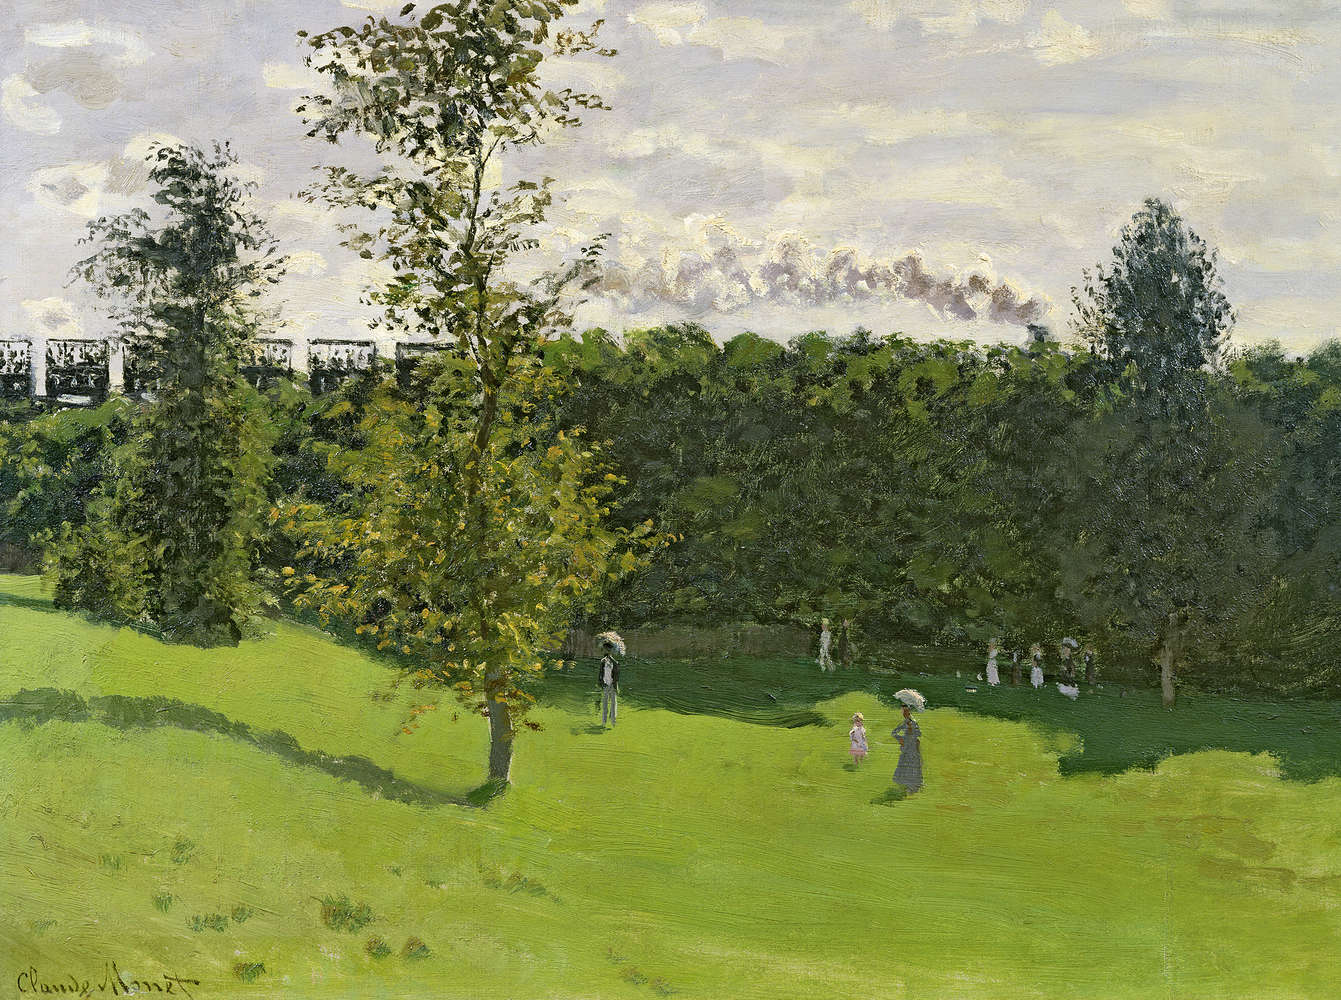             Papier peint panoramique "Train à la campagne" de Claude Monet
        